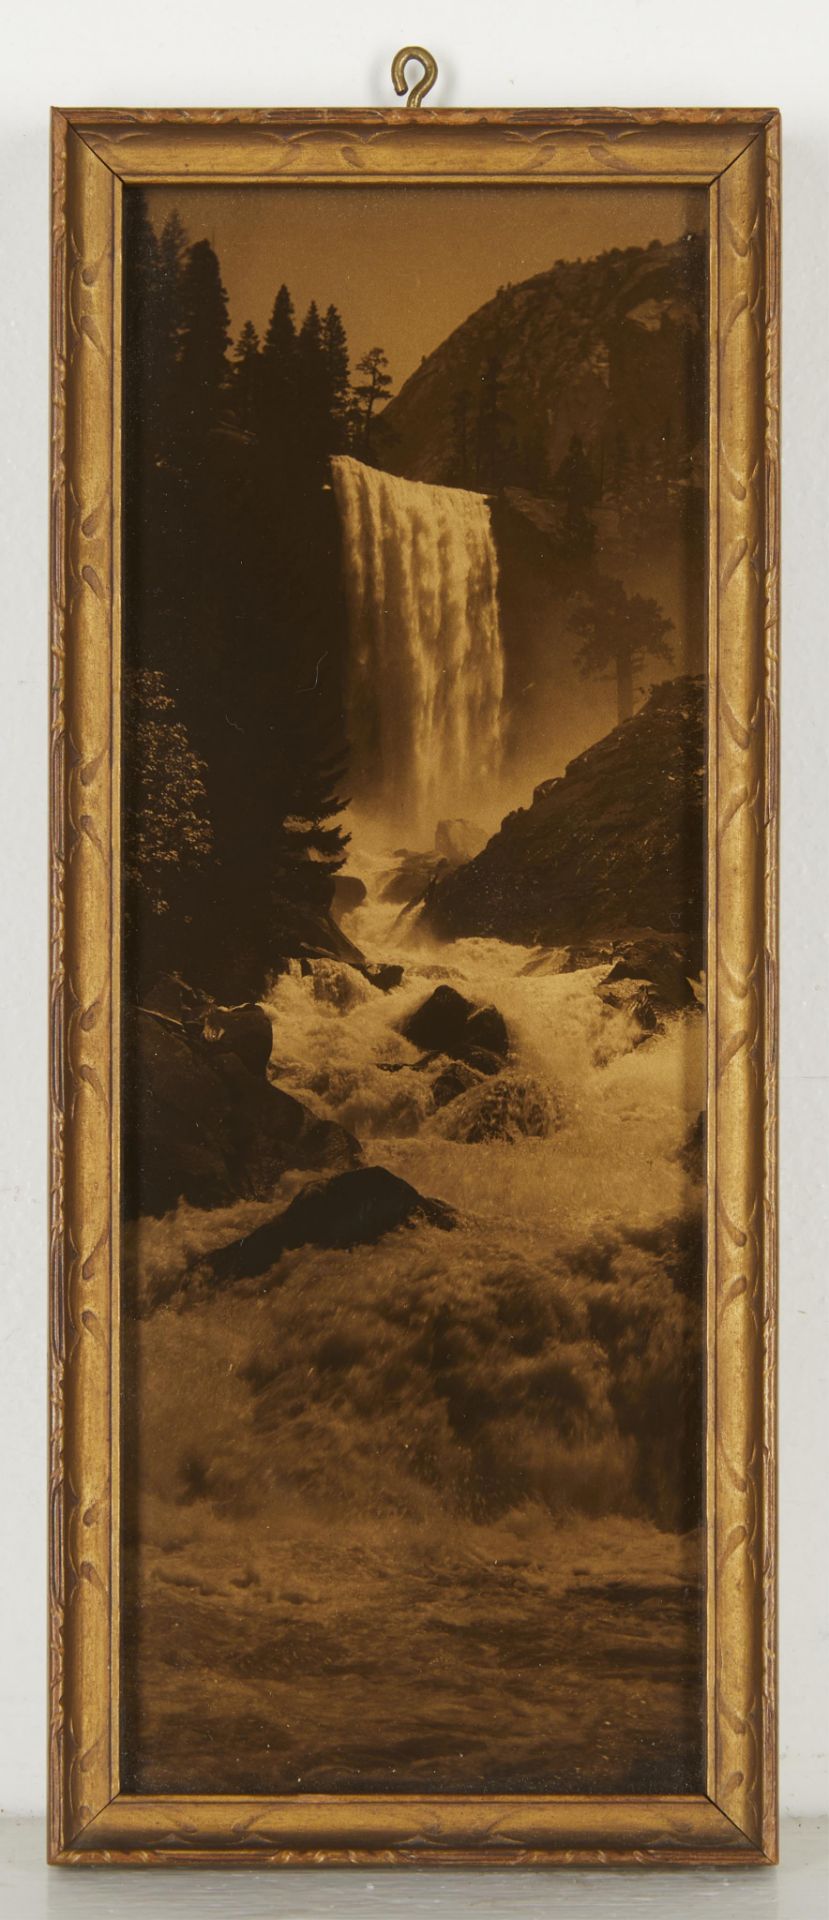 4 Asahel Curtis Goldtone Waterfalls & Woman Photos - Image 7 of 16